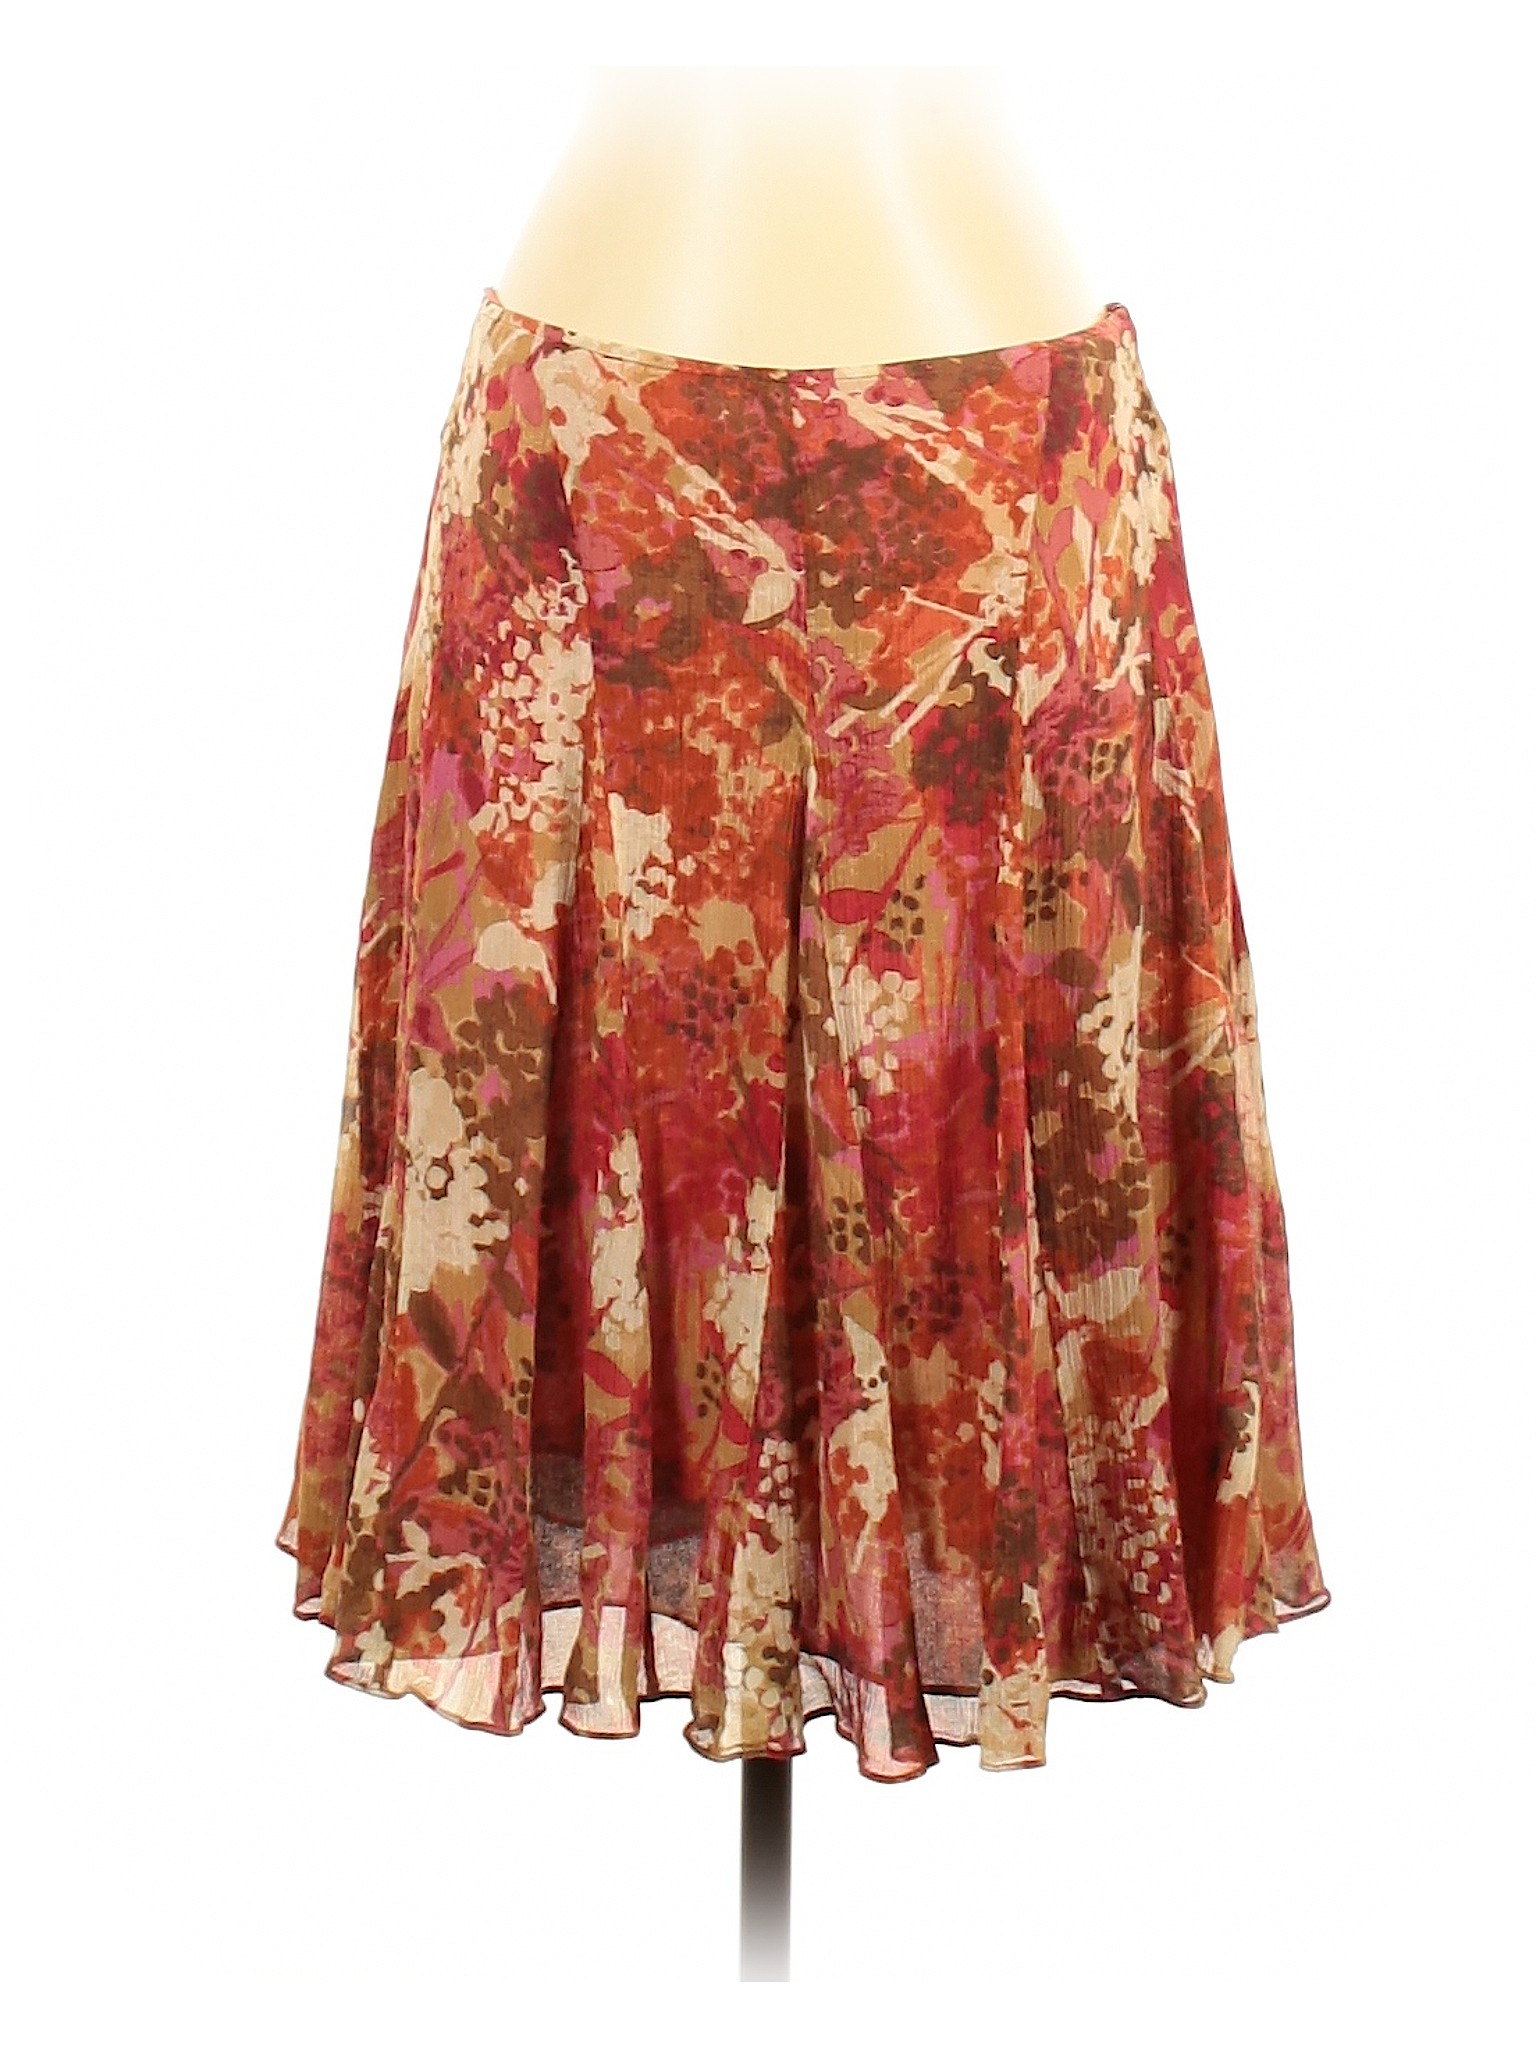 Sigrid Olsen Women Orange Silk Skirt 4 | eBay